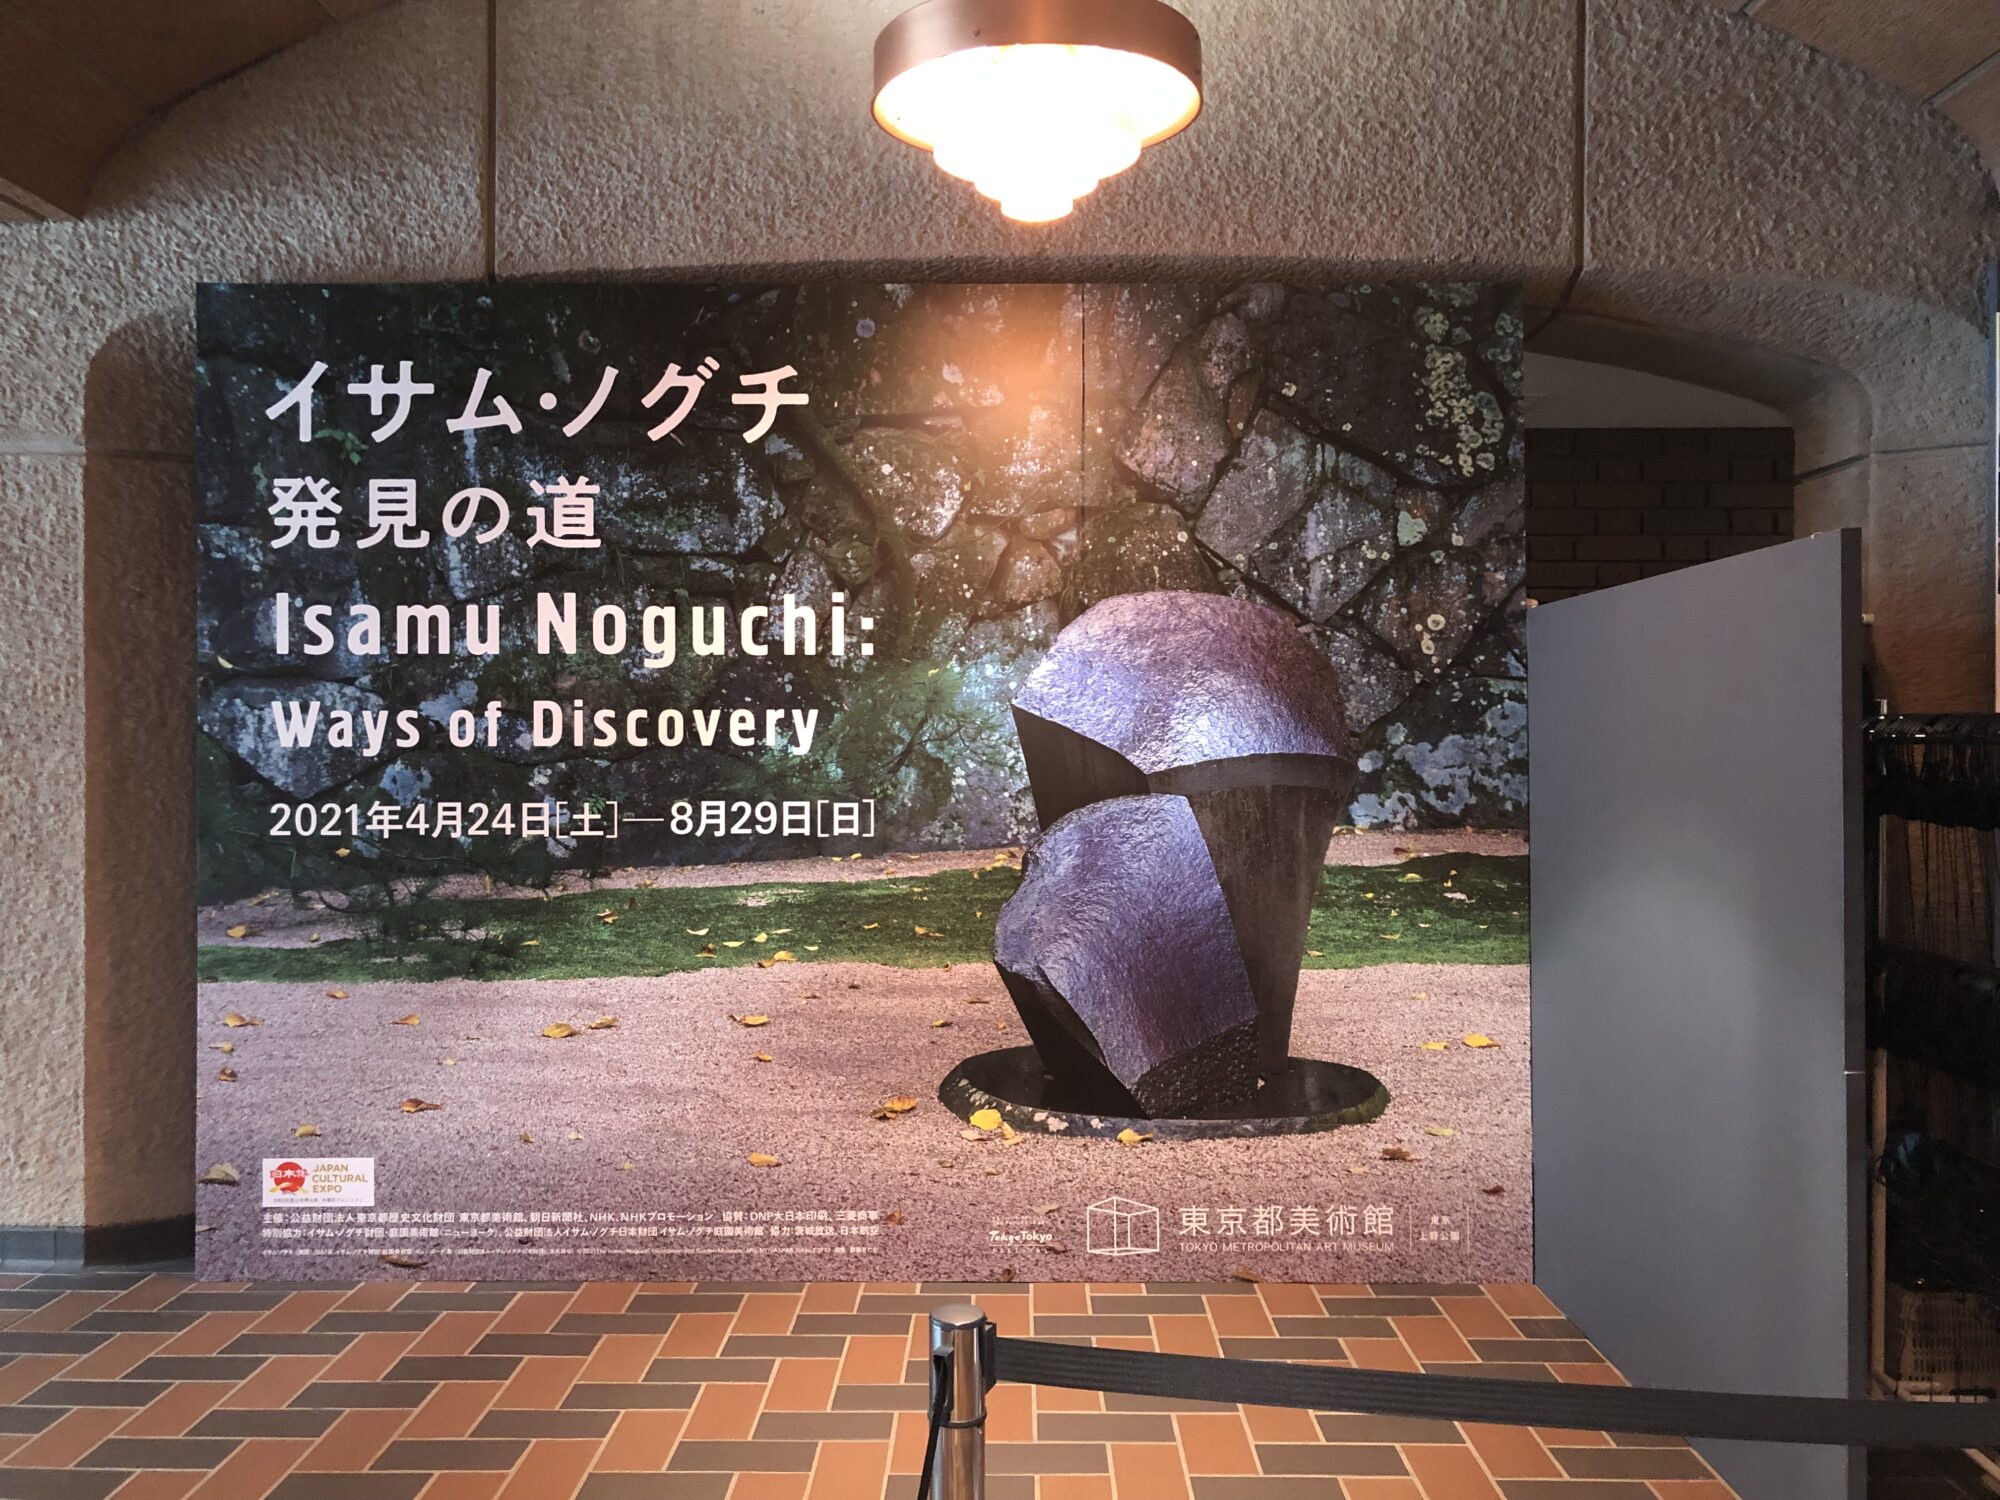 東京都美術館 イサム・ノグチ 発見の道 2021.8.29日まで あらためて知る作品も多く 作家の仕事が確認できた展覧会 – 週末は美術館へ